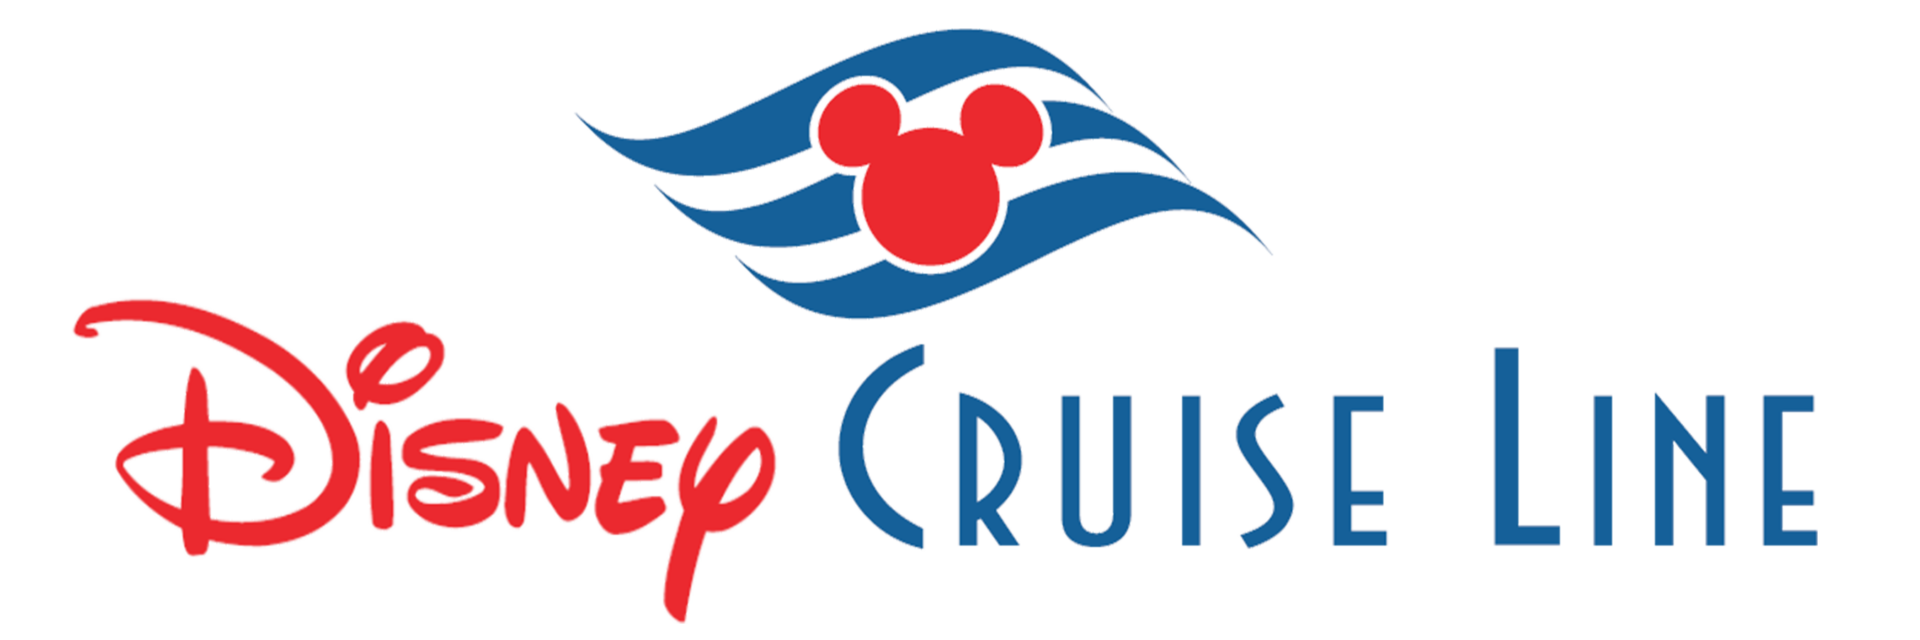 Disney Cruise Line Pema Tours Tu especialista en cruceros